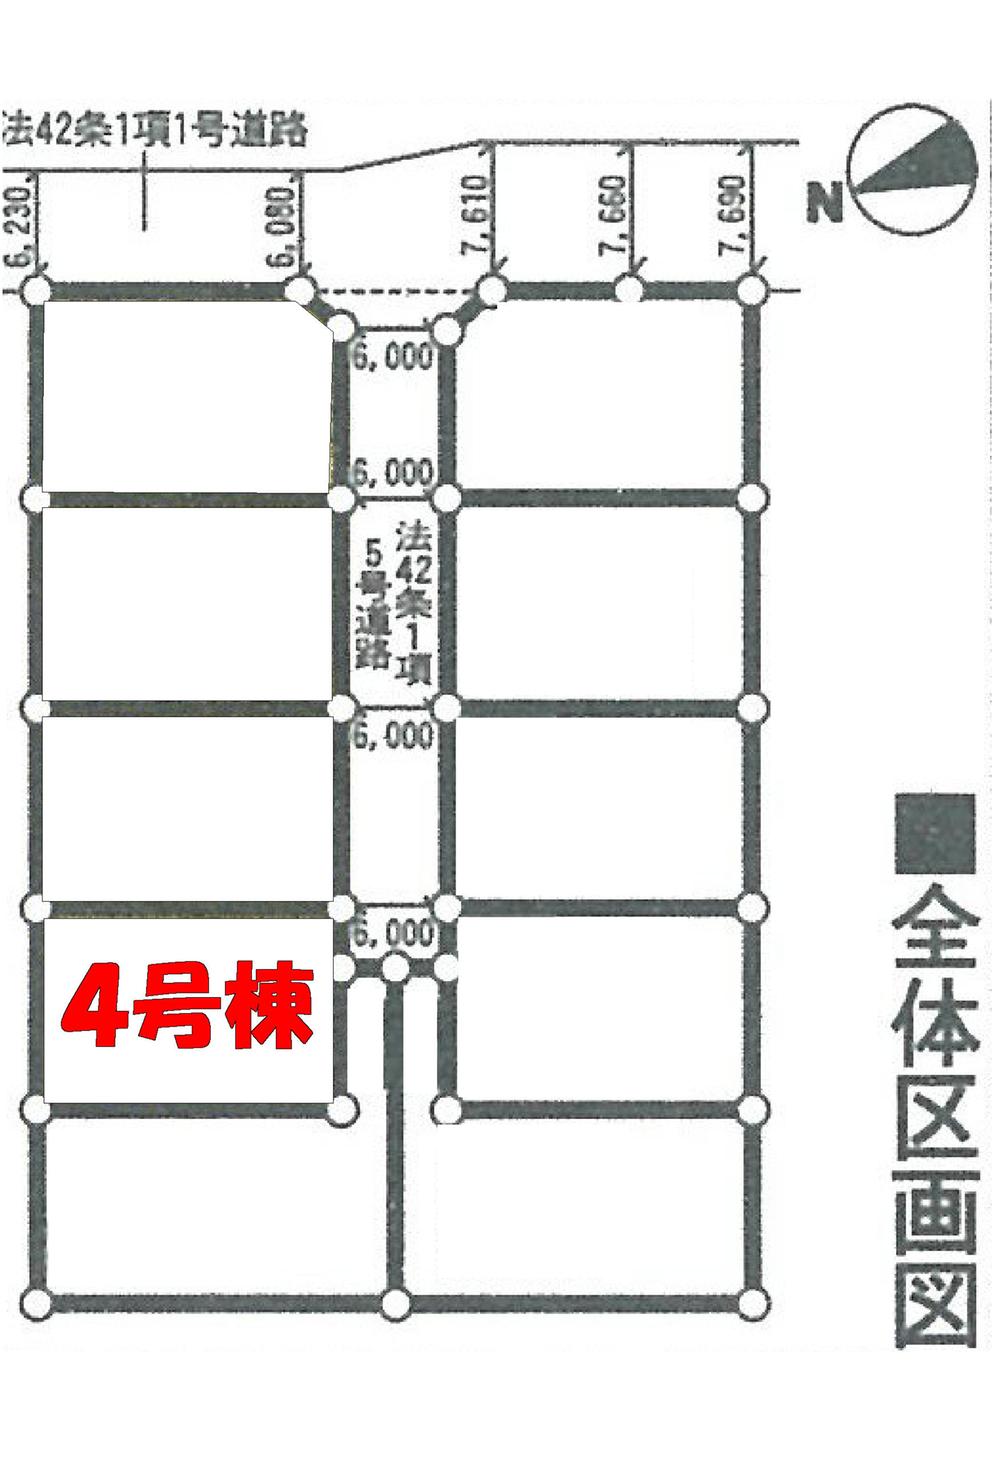 Compartment figure. 18.9 million yen, 4LDK, Land area 166.38 sq m , Building area 98.41 sq m